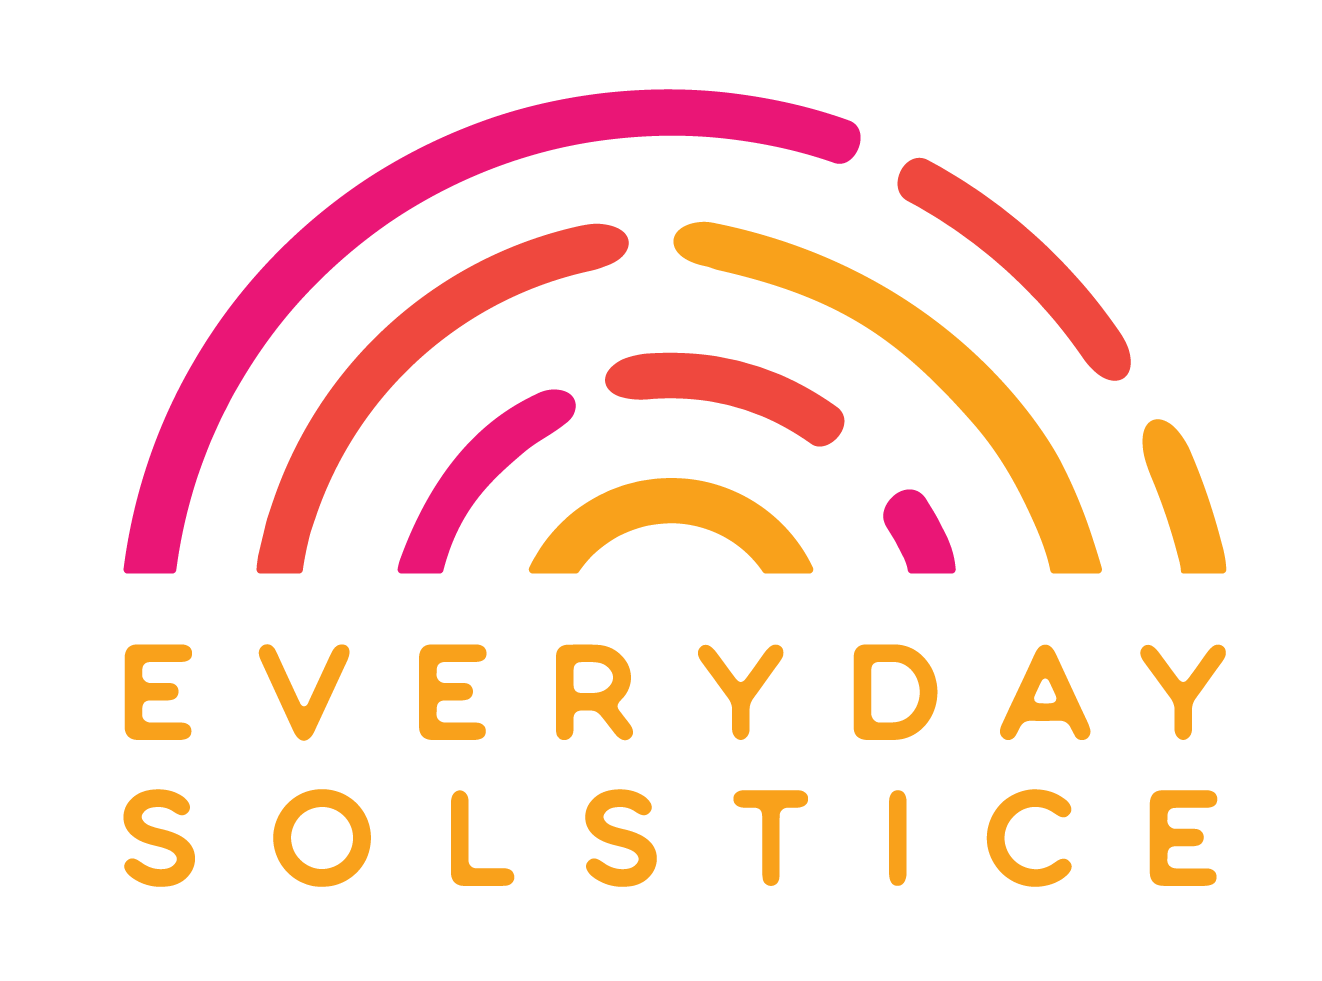 Everyday Solstice